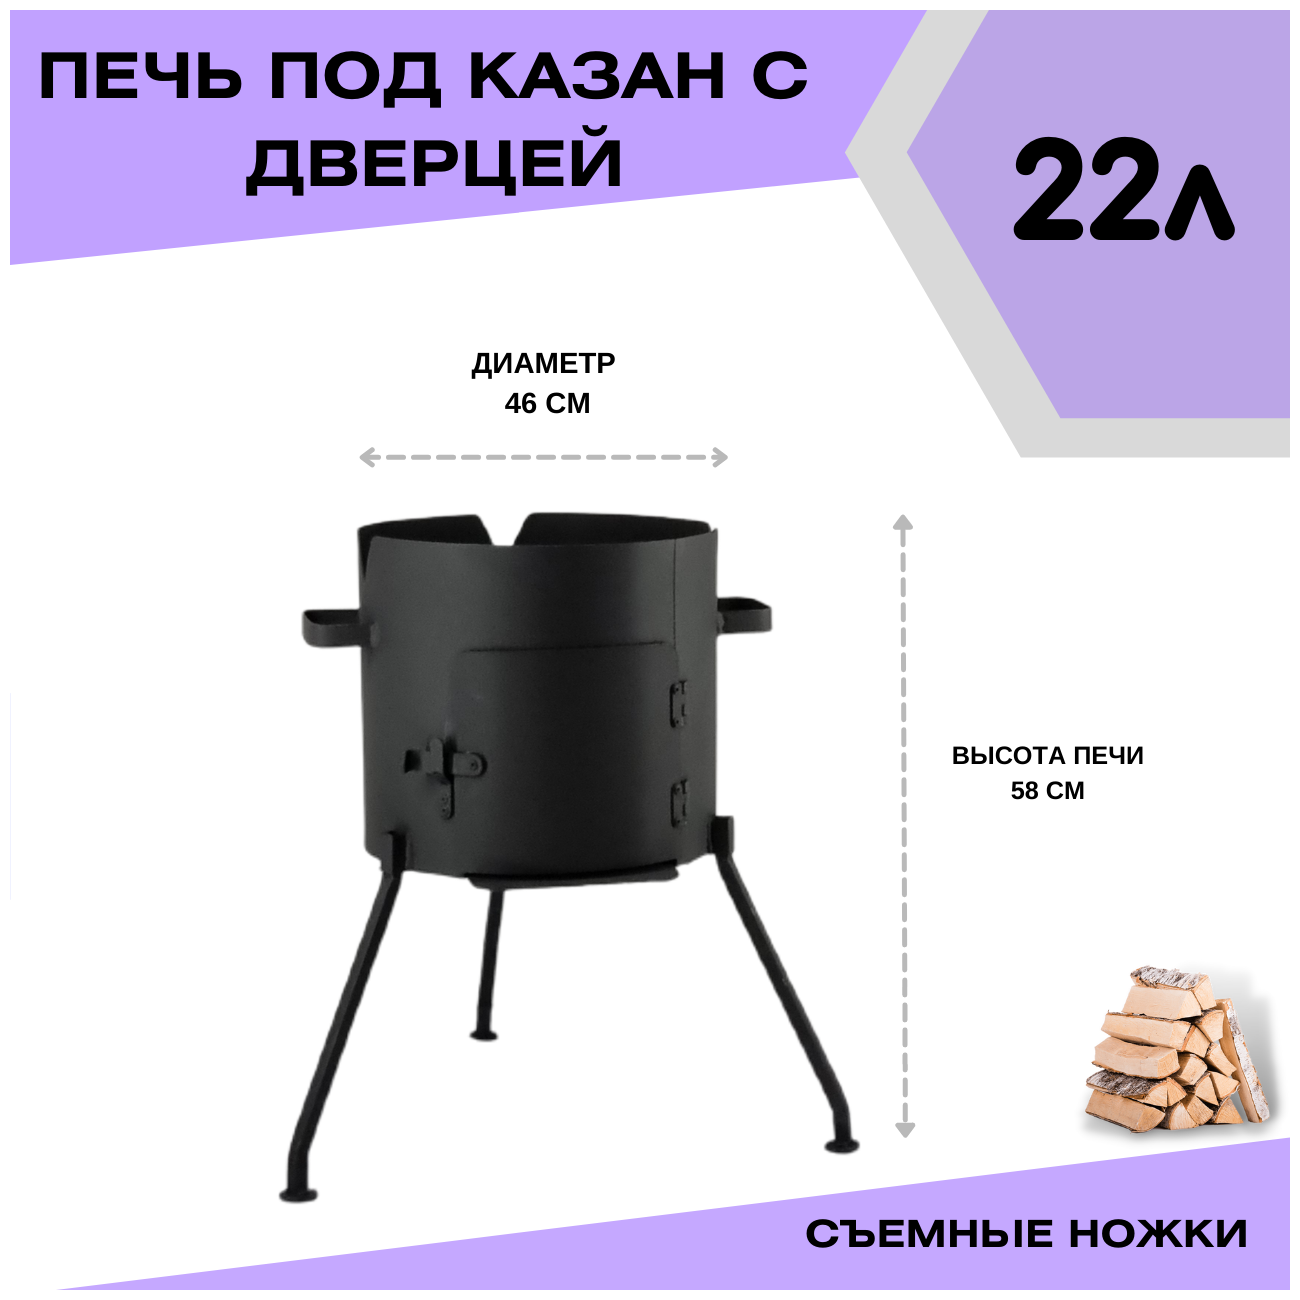 Печка с дверцей под казан 22 литра диаметр 46 см со съемными ножками(разборная) Svargan